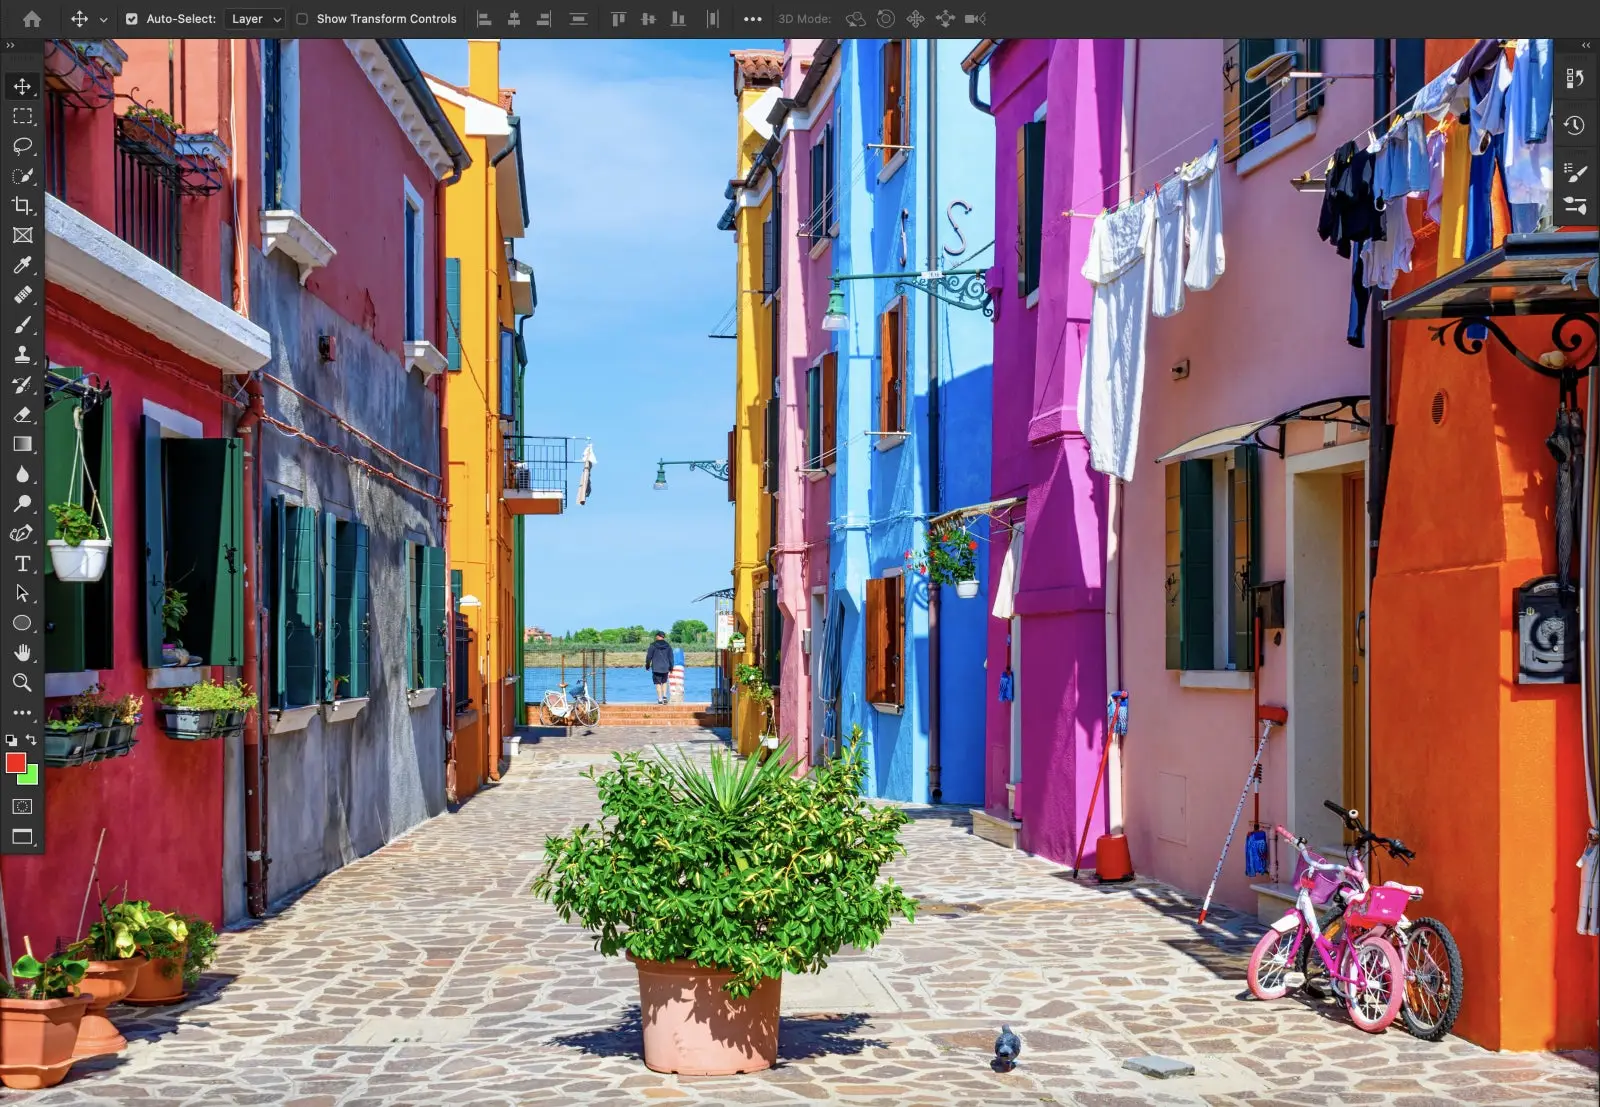 Foto de un barrio con casas coloridas, al fondo está el mar, en primer plano hay una planta y alrededor hay más macetas, ropa y una bicicleta